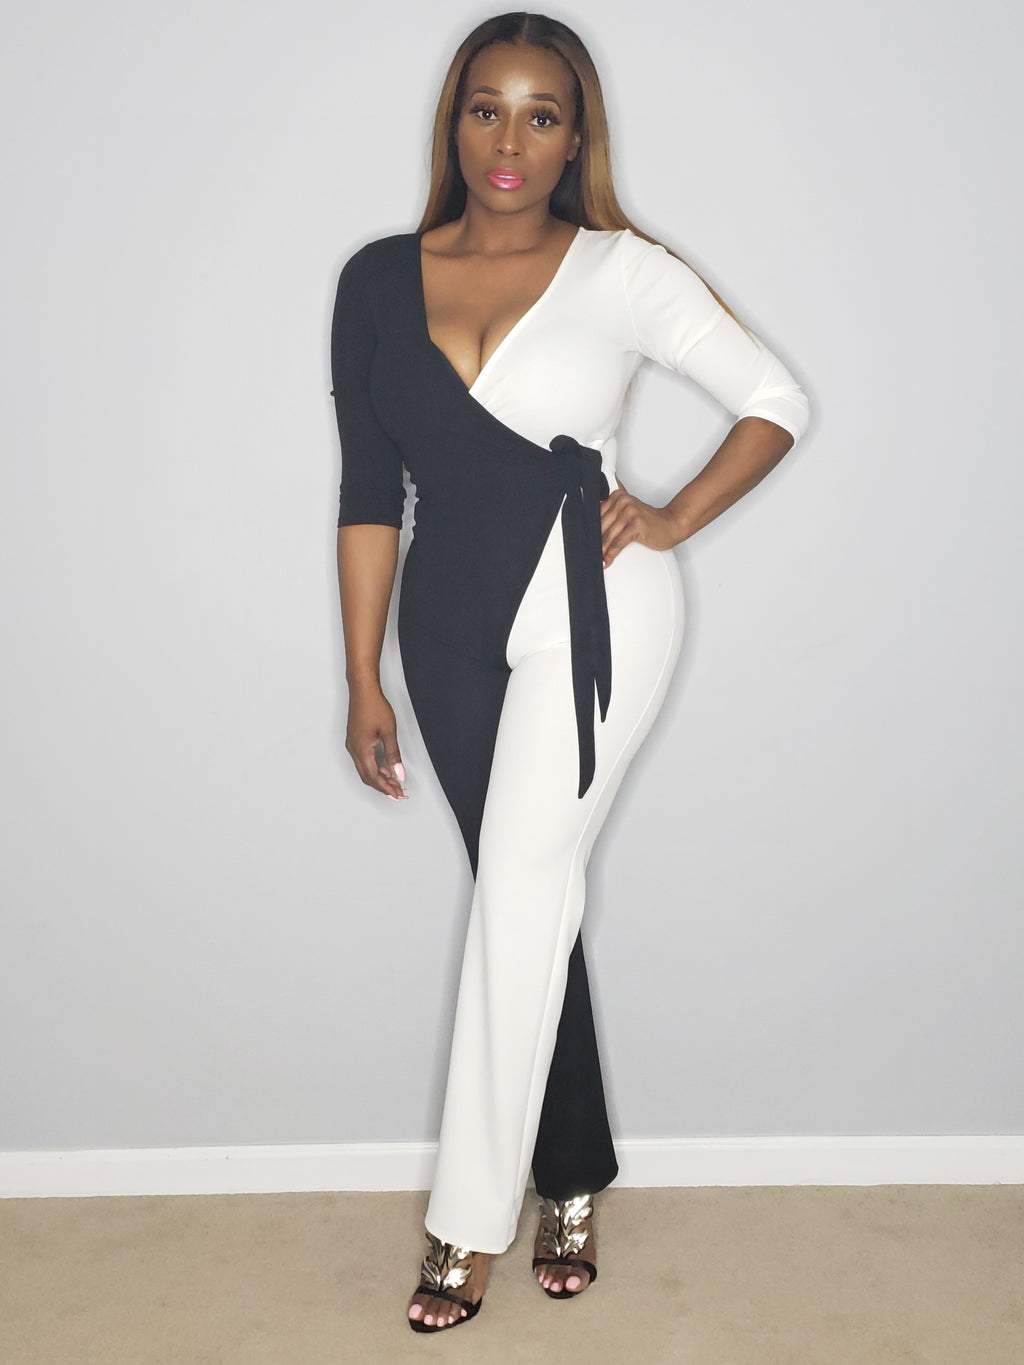 Cassie Black White Color Block Long Sleeve Wrap Style Deep V-Neck Stretch Fit Jumpsuit - A' LA' POSH Clothing